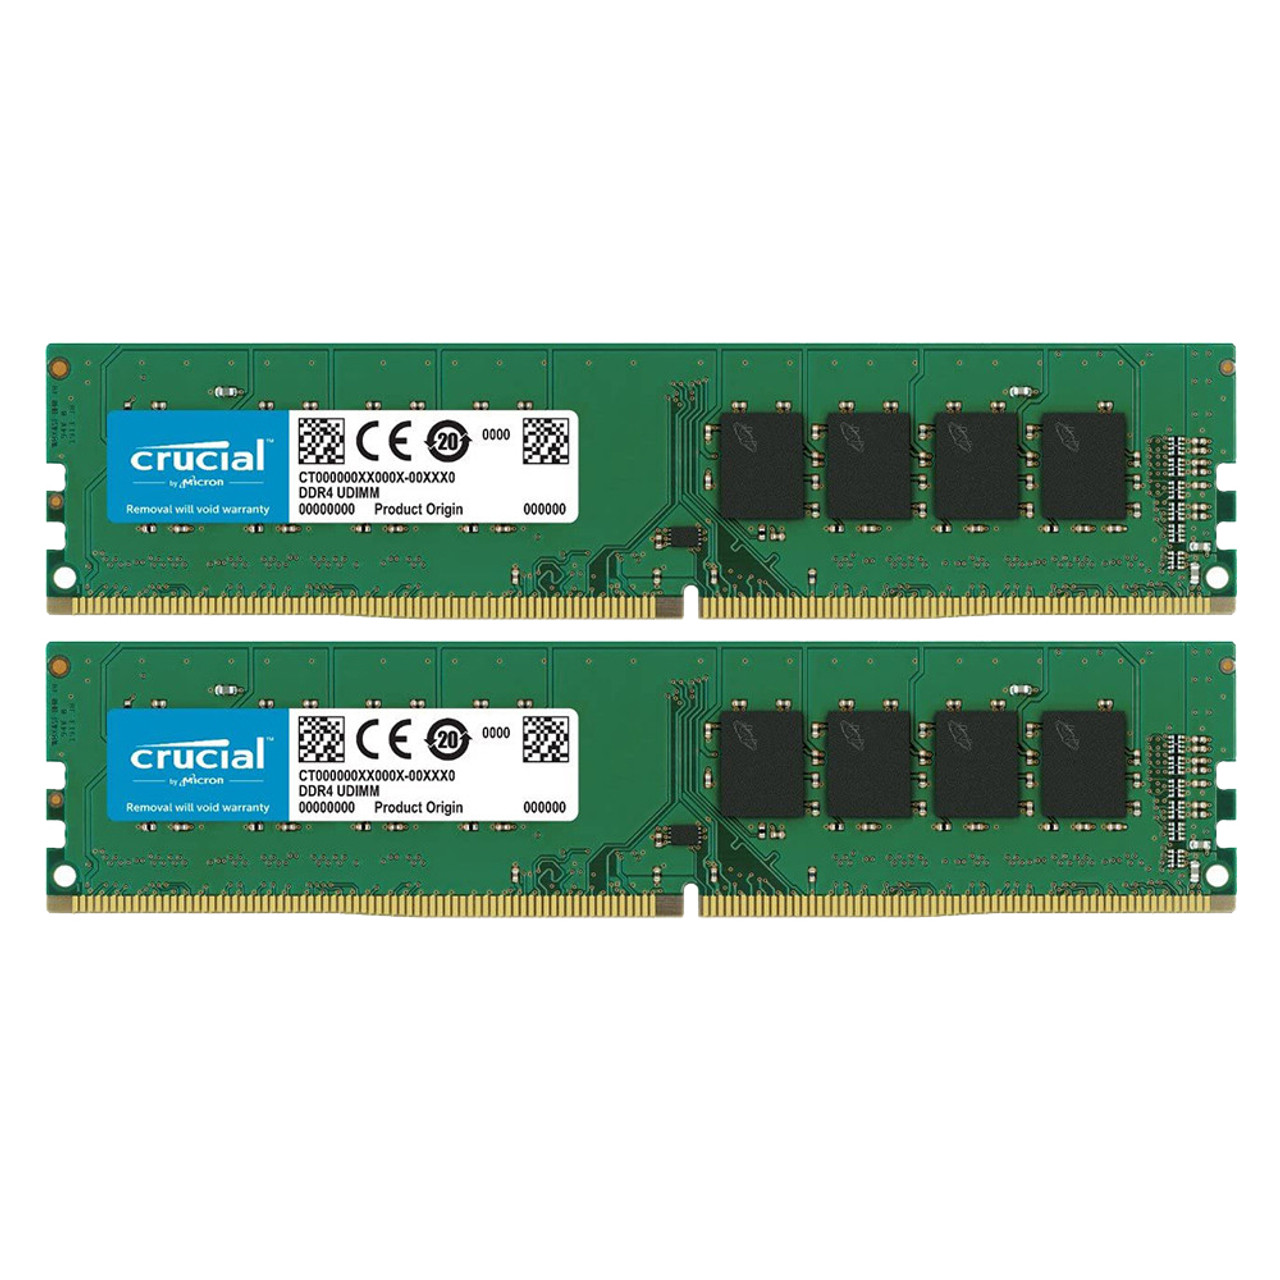 Crucial CT2K32G4DFD8266 RAM 64GB Kit (2x32GB) DDR4 2666 MHz CL19 UDIMM Desktop Memory